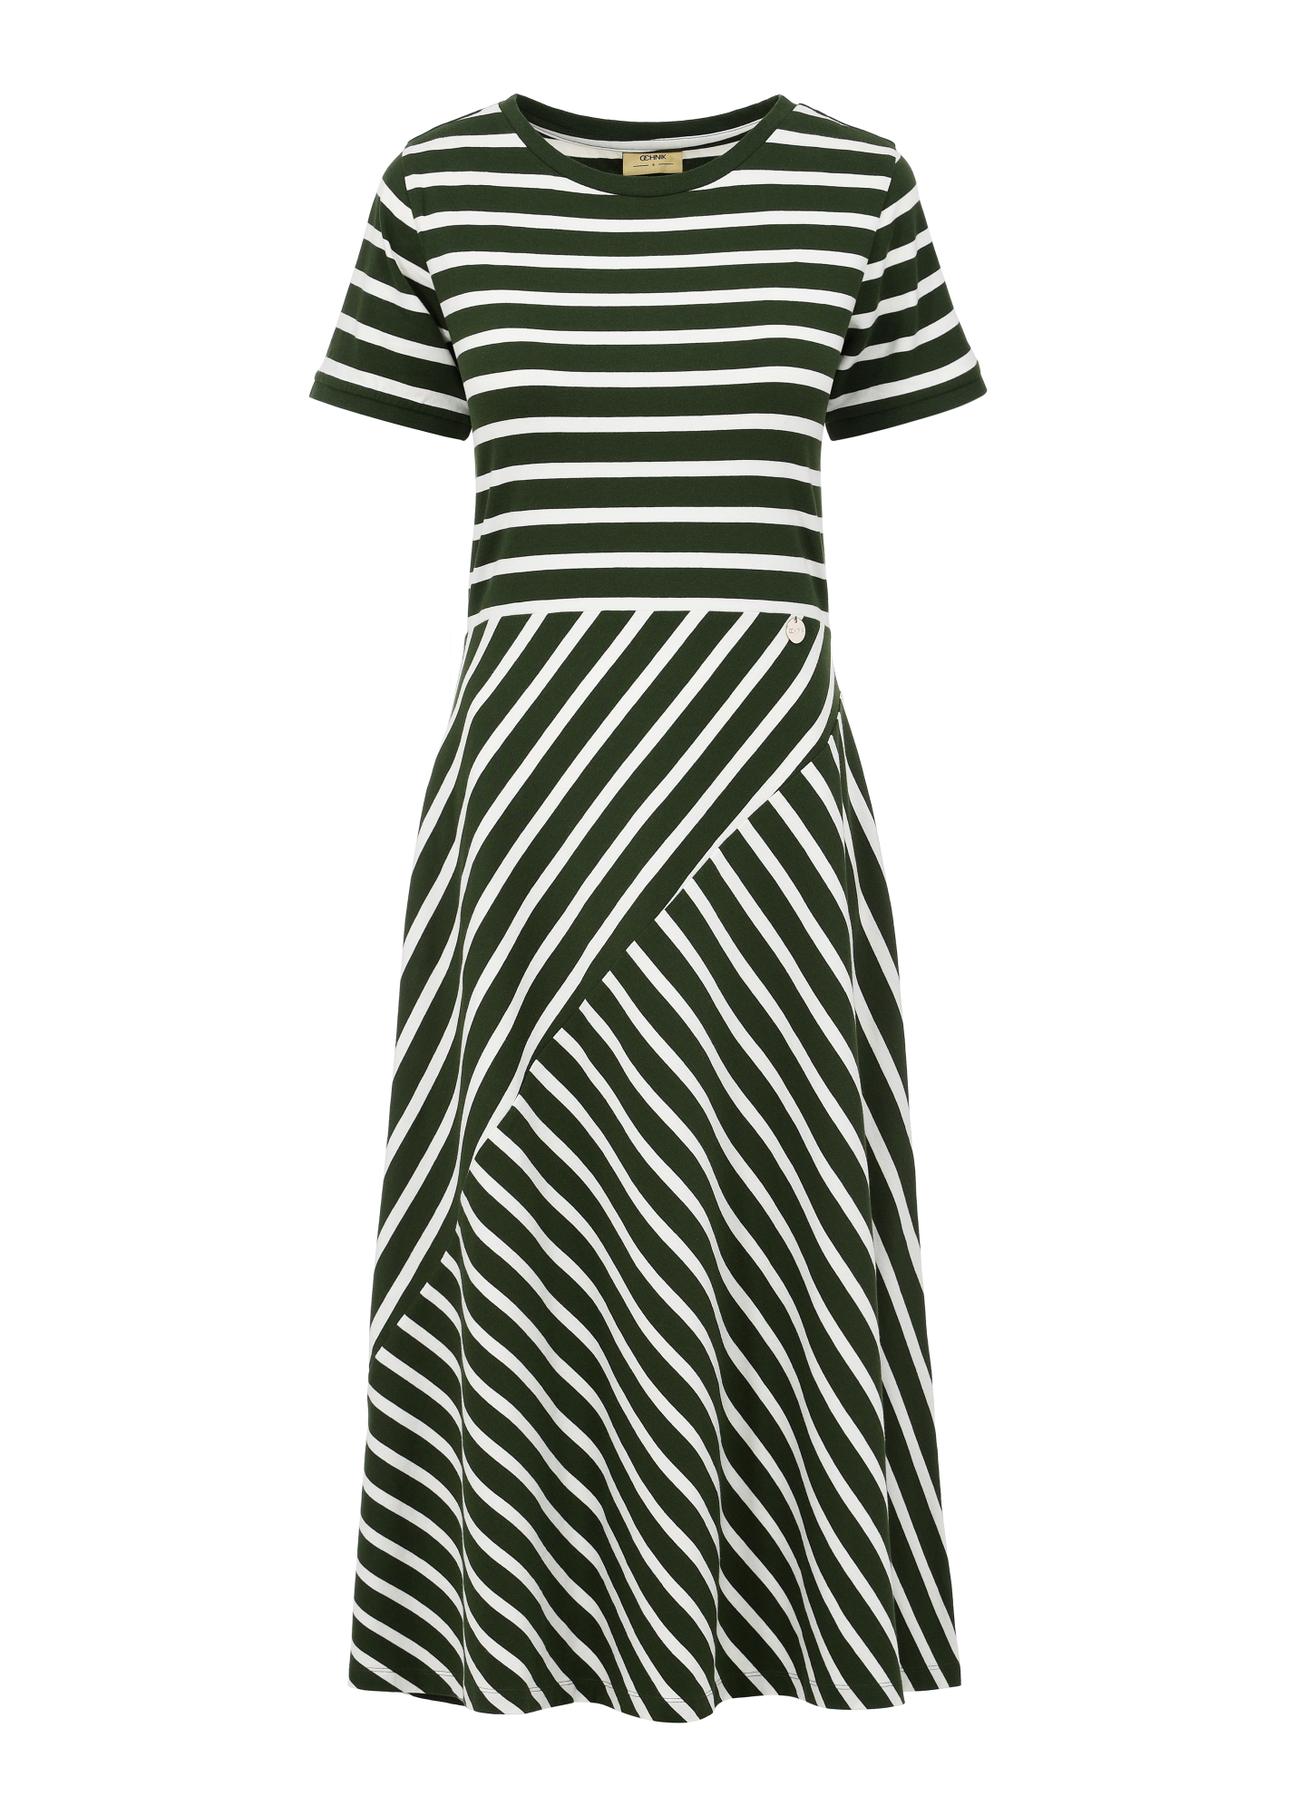 Bawełniana sukienka w zielono-białe paski SUKDT-0182-55(W24)